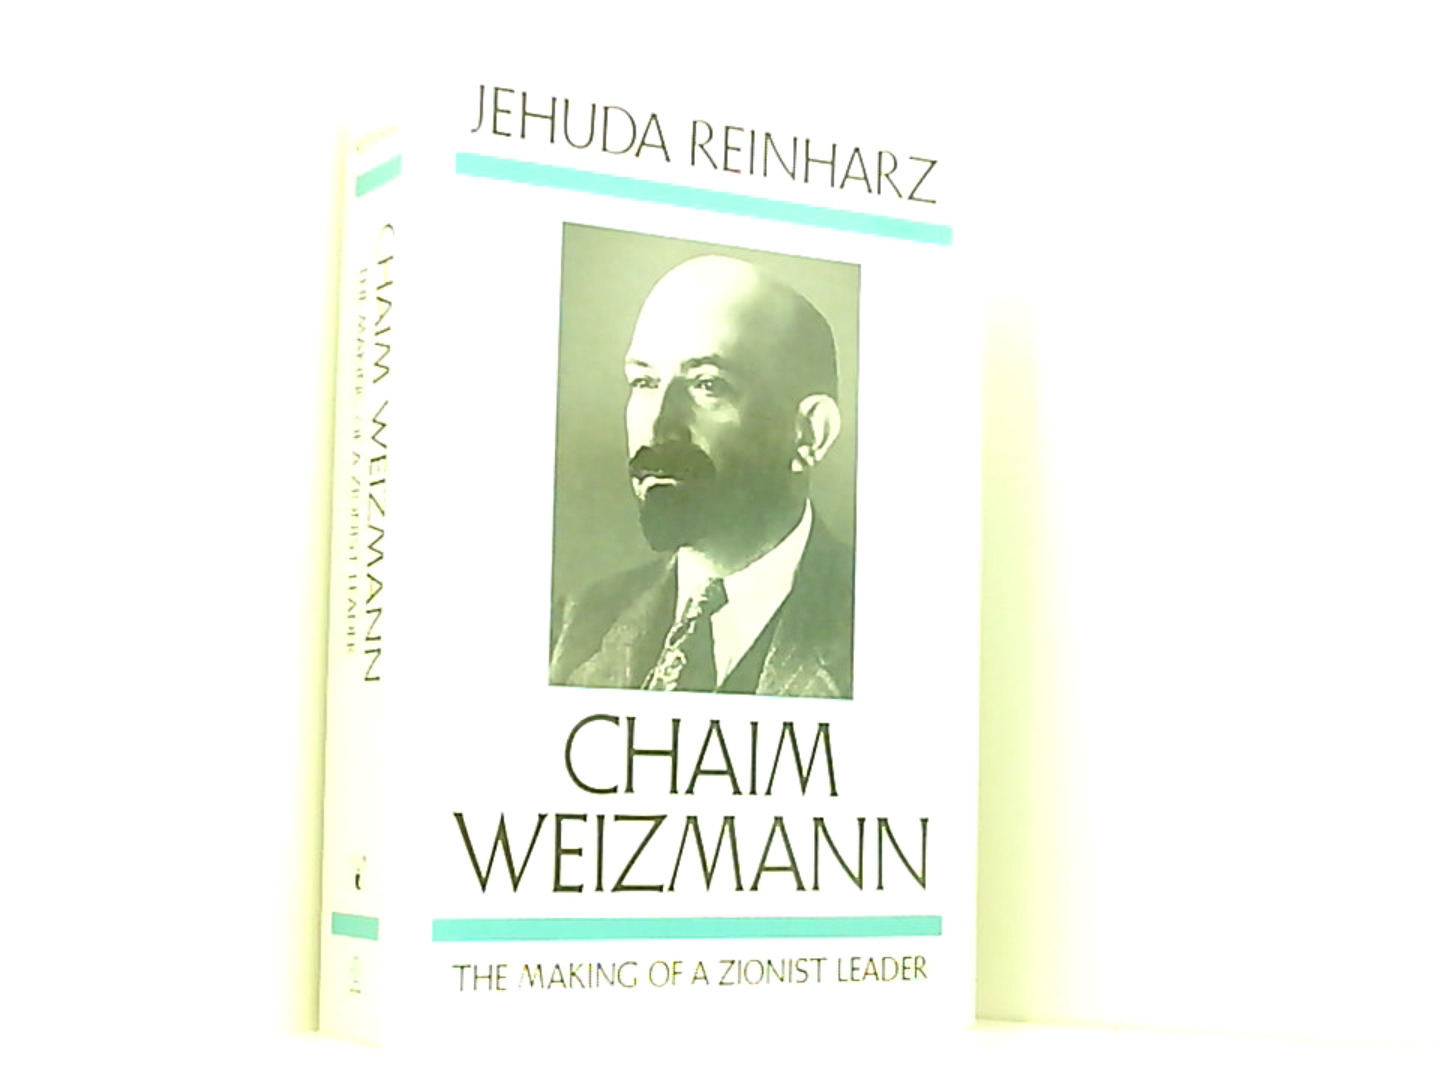 Chaim Weizmann: The Making of a Zionist Leader: The Making of a Zionist Leader Volume 1 (Studies in Jewish History) - Reinharz, Jehuda